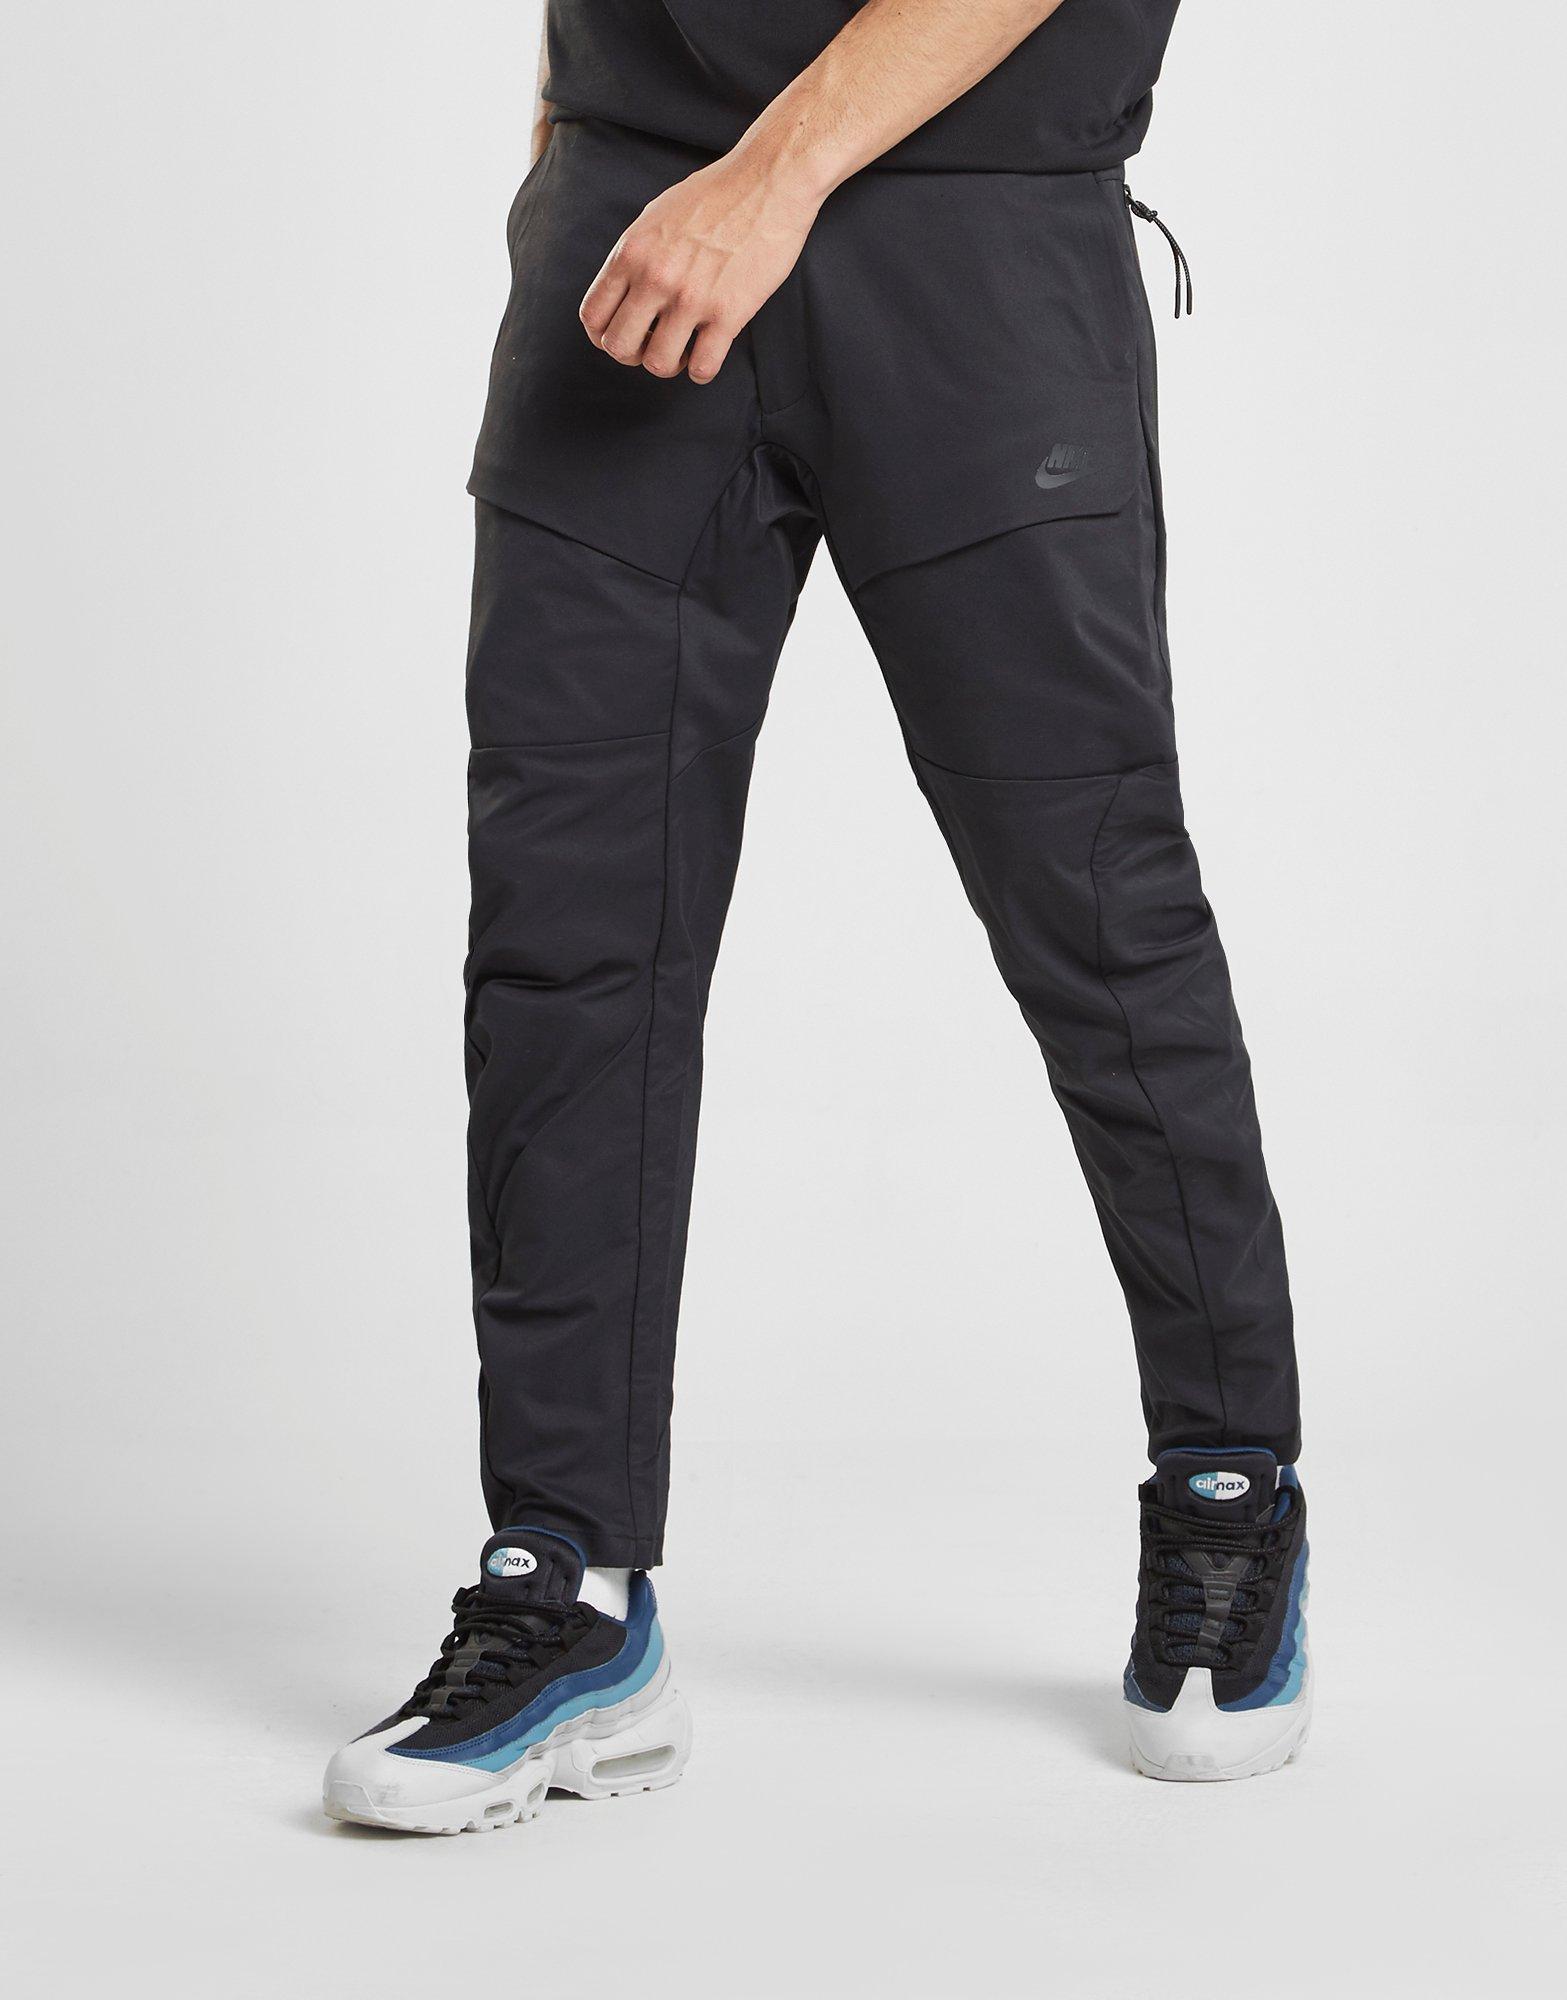 Nike Tech Pack Pants Black La France, SAVE 46% - aveclumiere.com